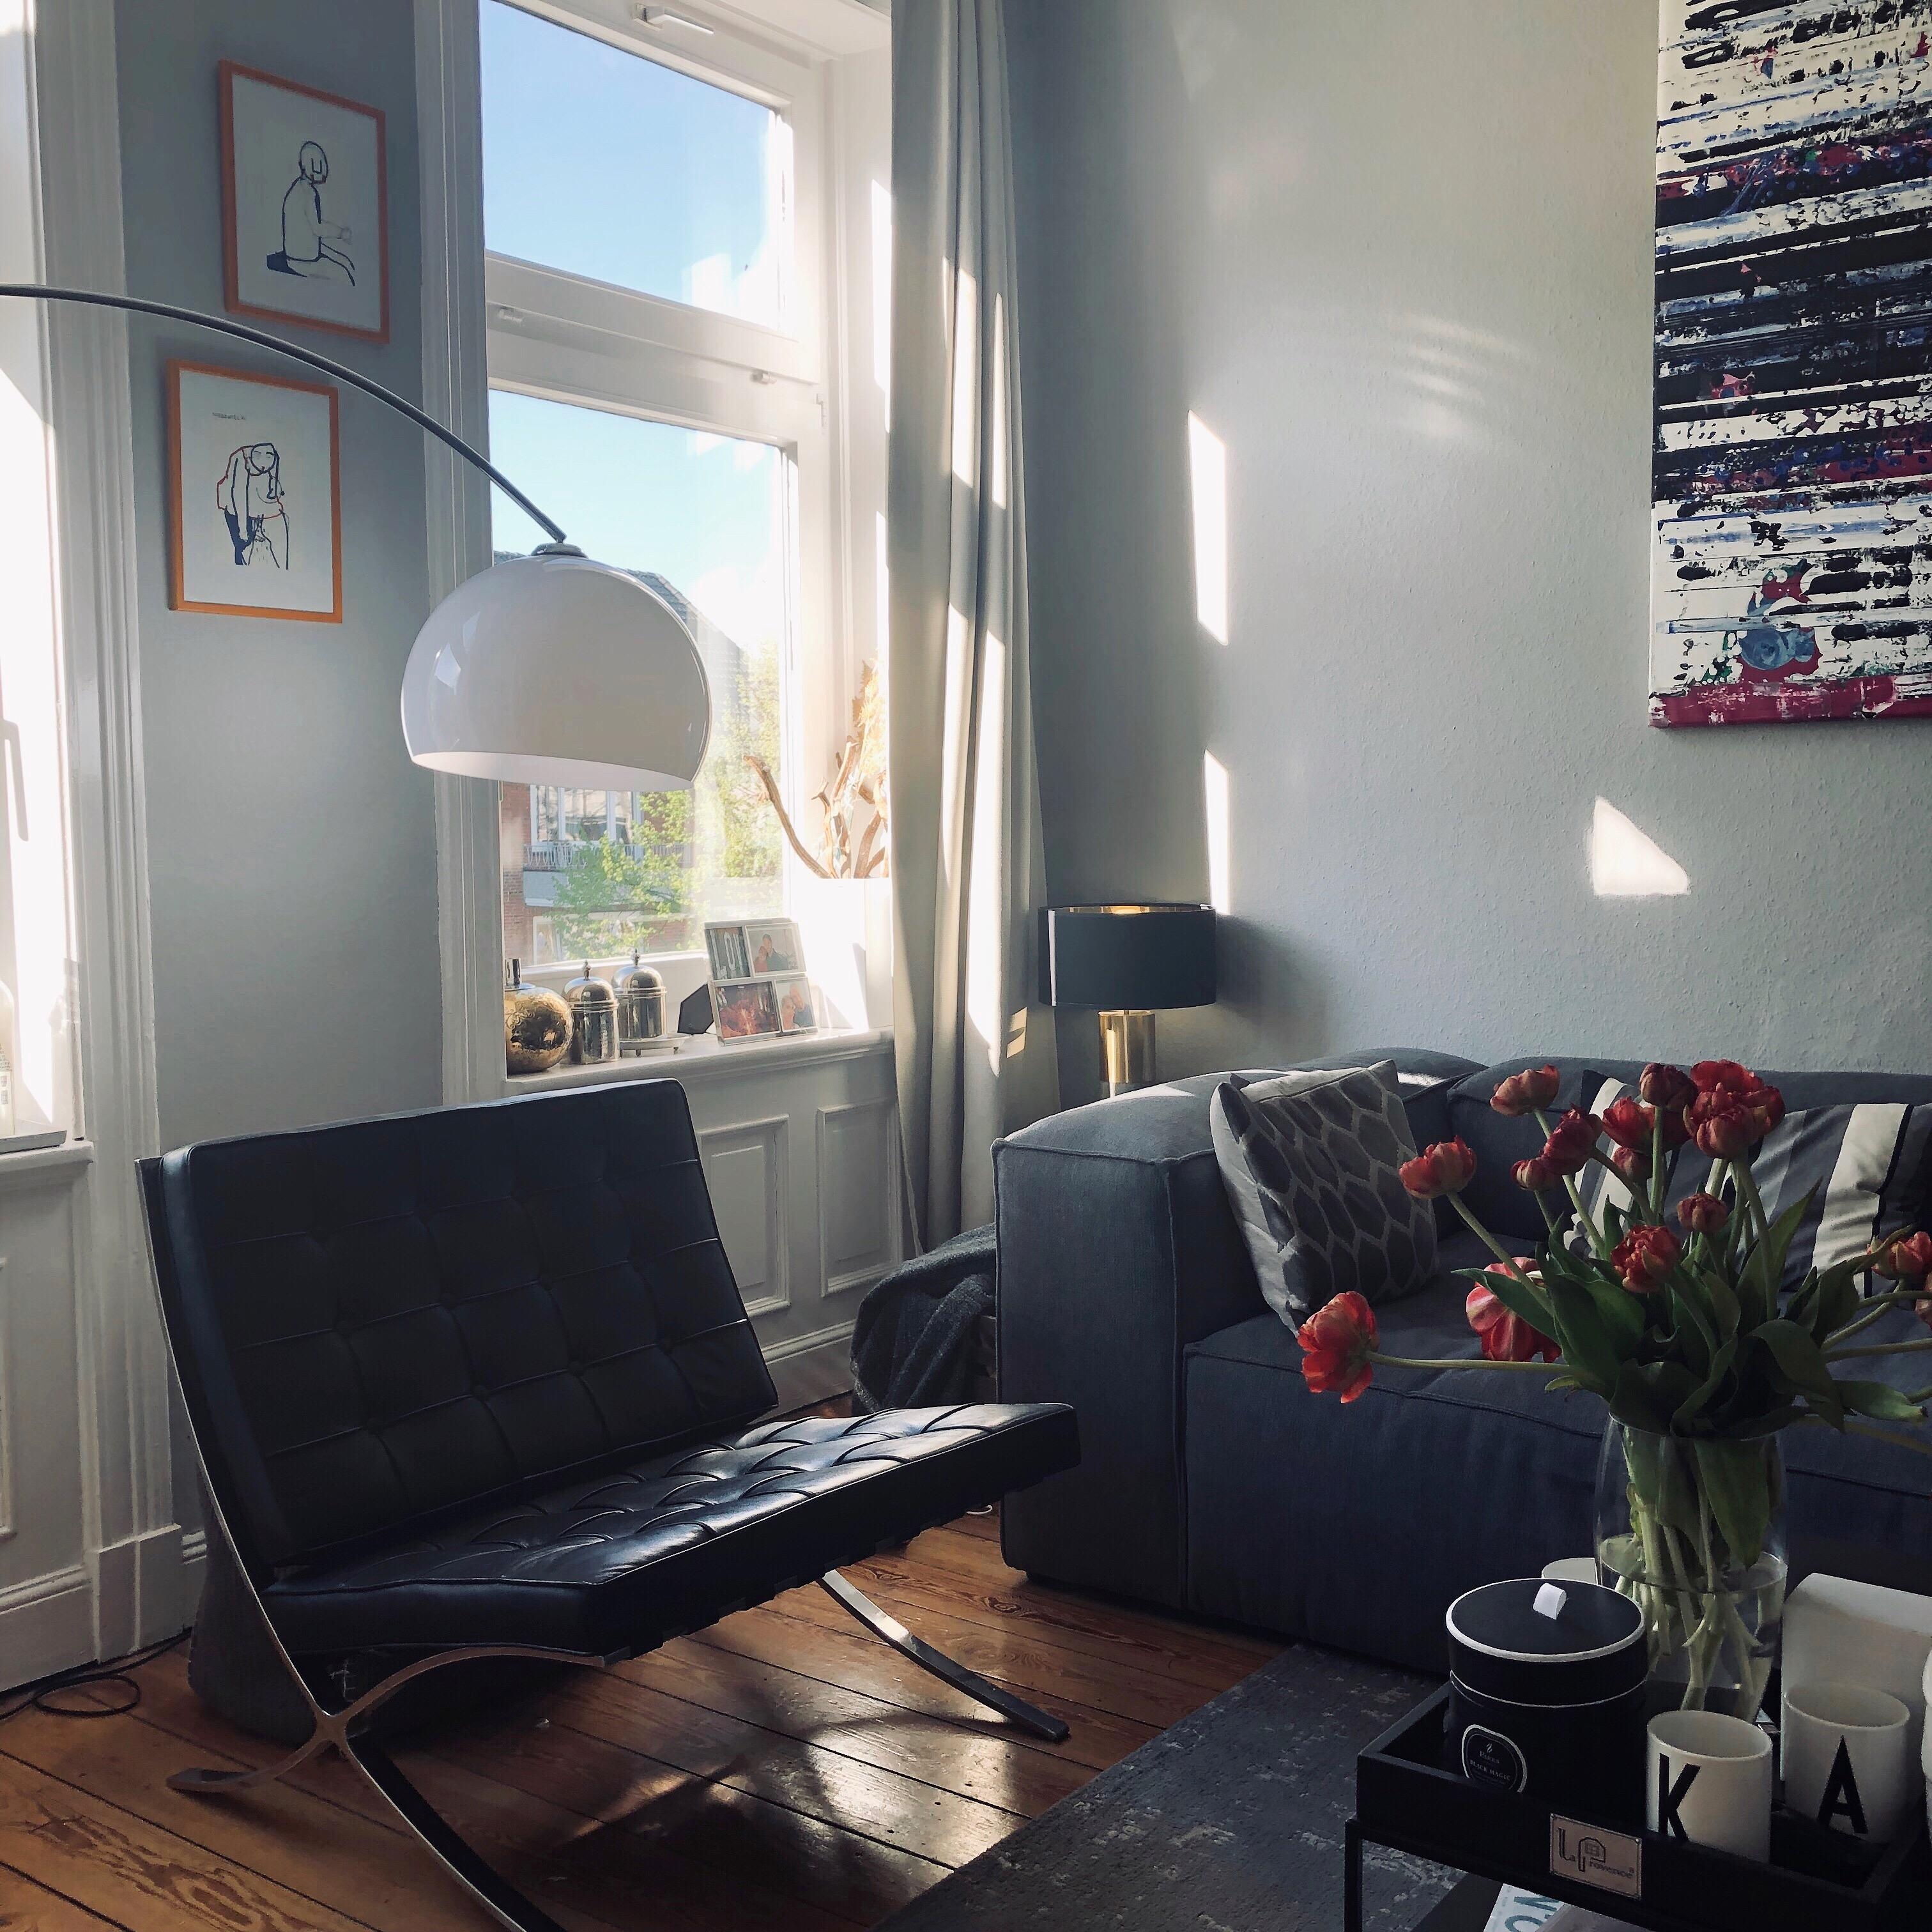 Sun is out in Hamburg #interior #interiordesign #couchstyle #art #danishdesign #chair #tulpen